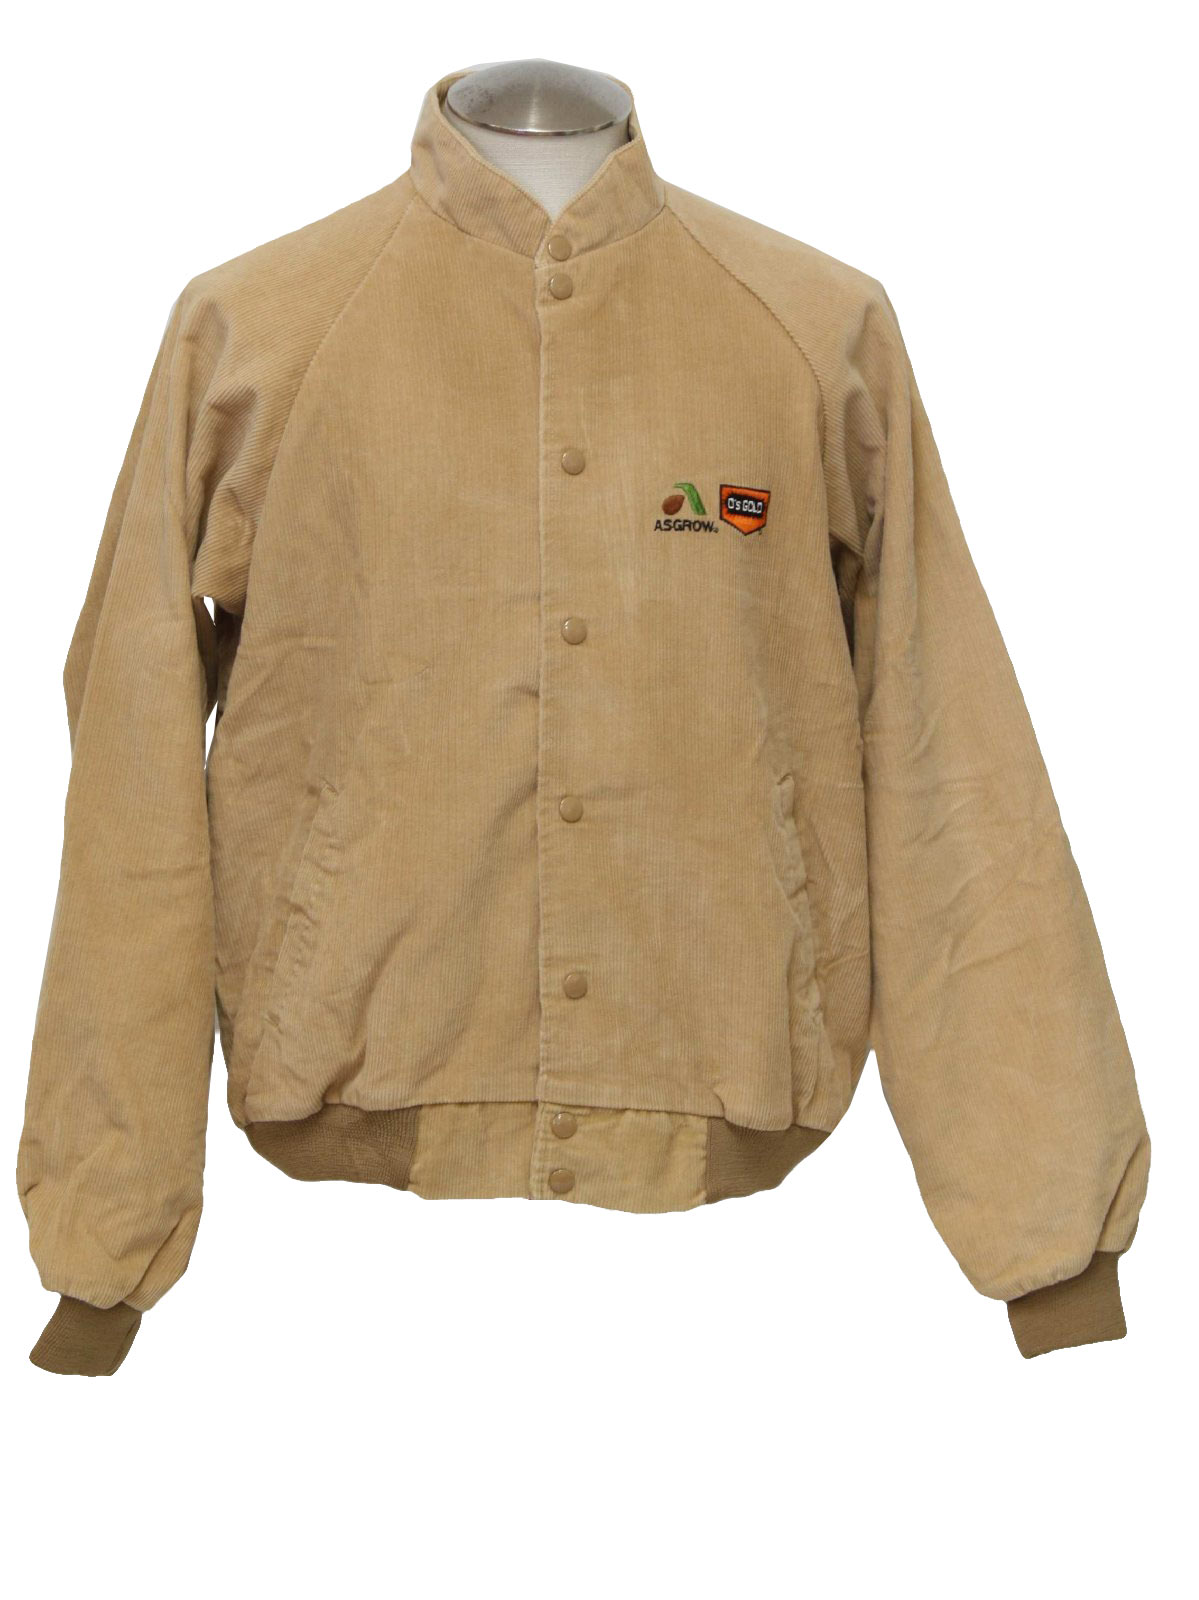 Vintage 90s Jacket: 90s -K Brand- Mens camel colored longsleeve ...